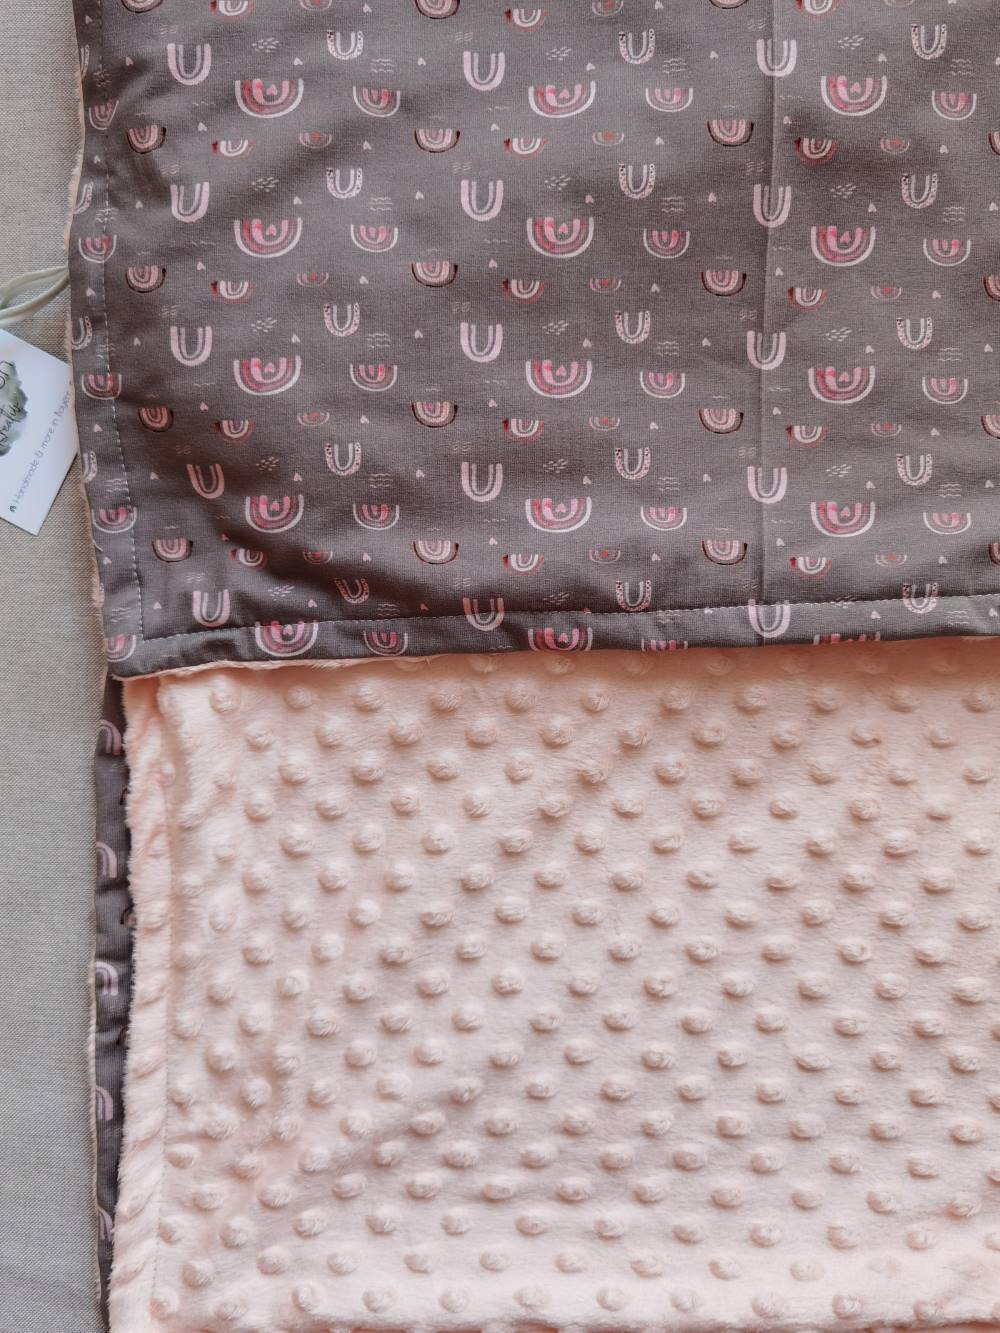 Selectionkreativ - Decke mit Minky Fleece in Rosa Nude und super schönen Regenbogenmotiv. Ein Mädchentraum 